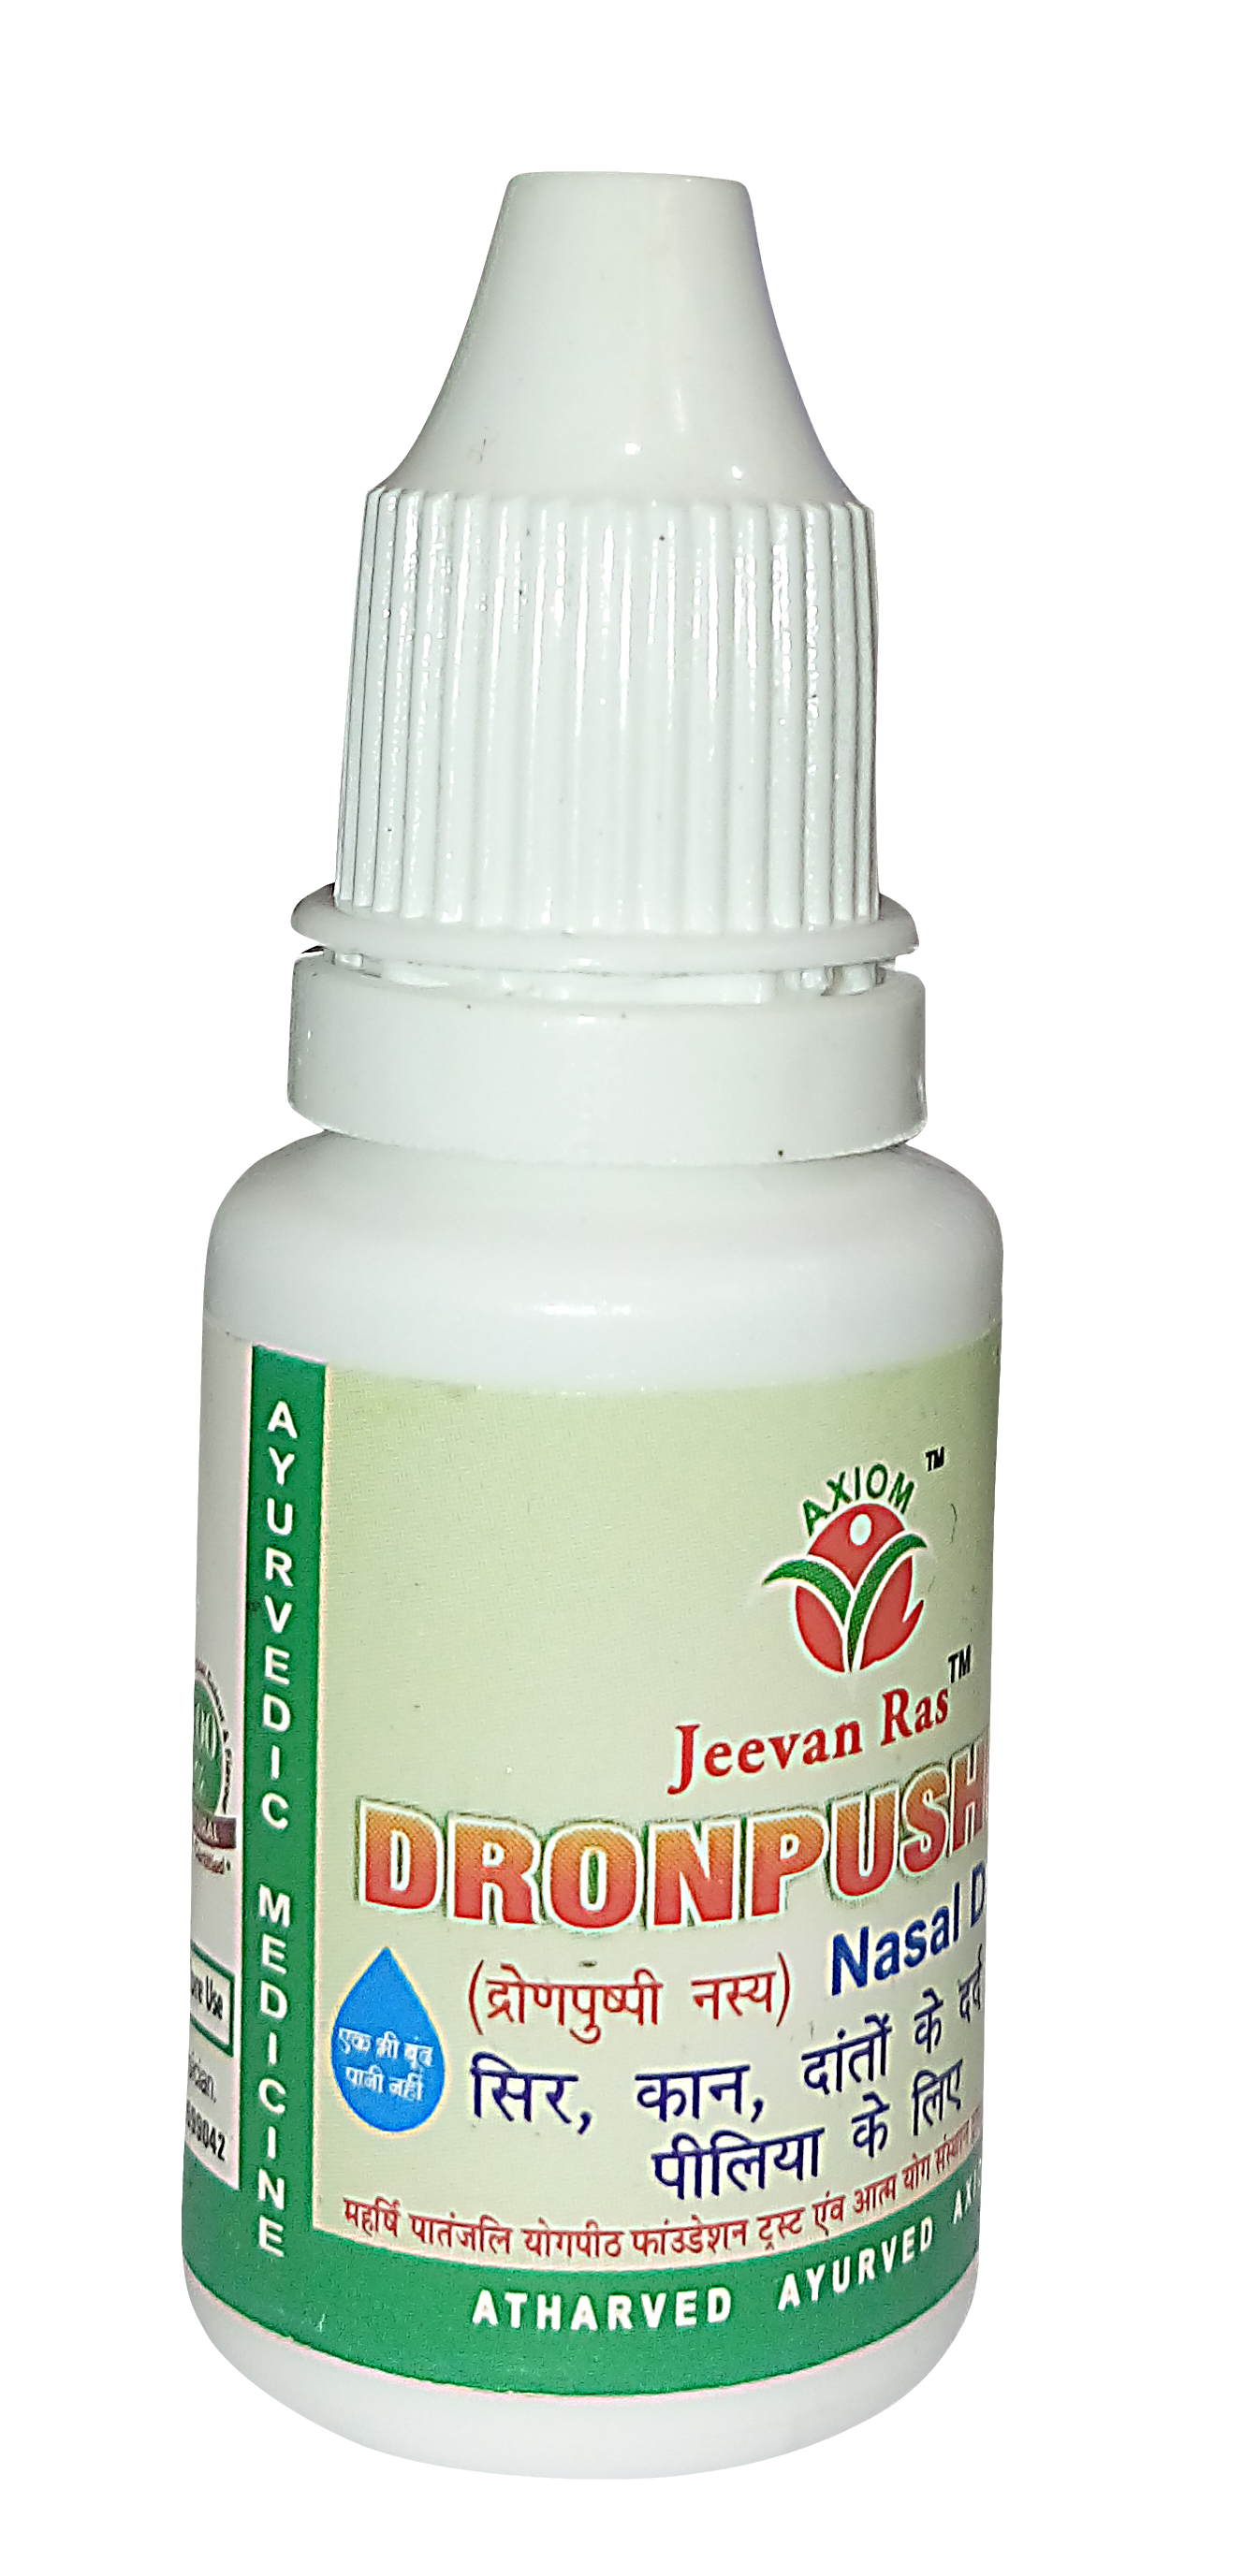 Axiom Dronpushpi Nasal drop